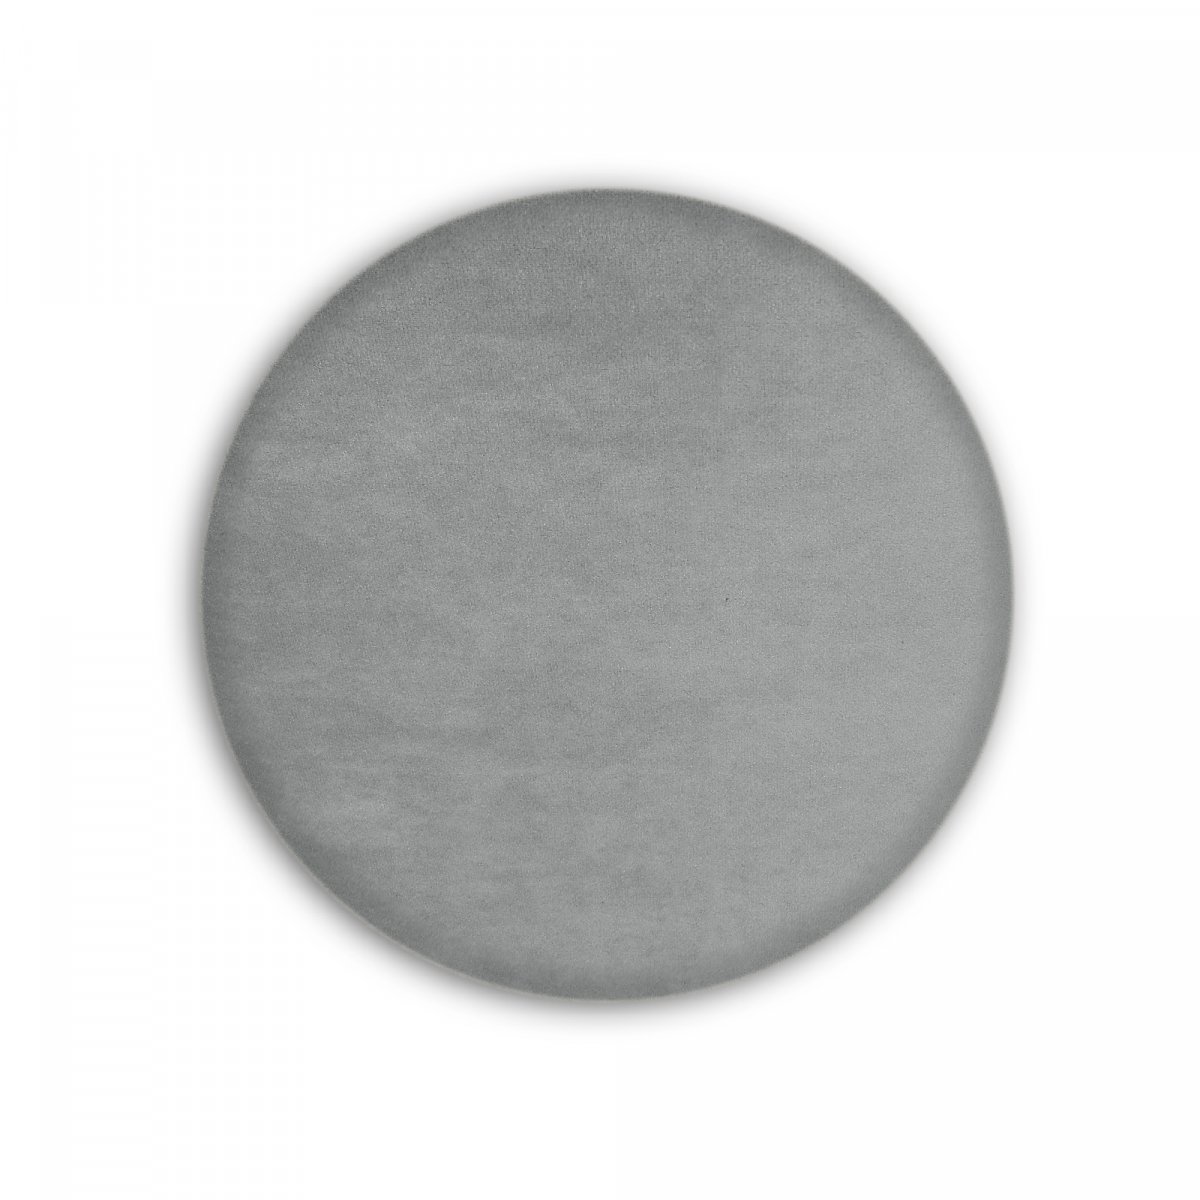 Čalouněný  panel kolo - průměr 20 cm, šedá